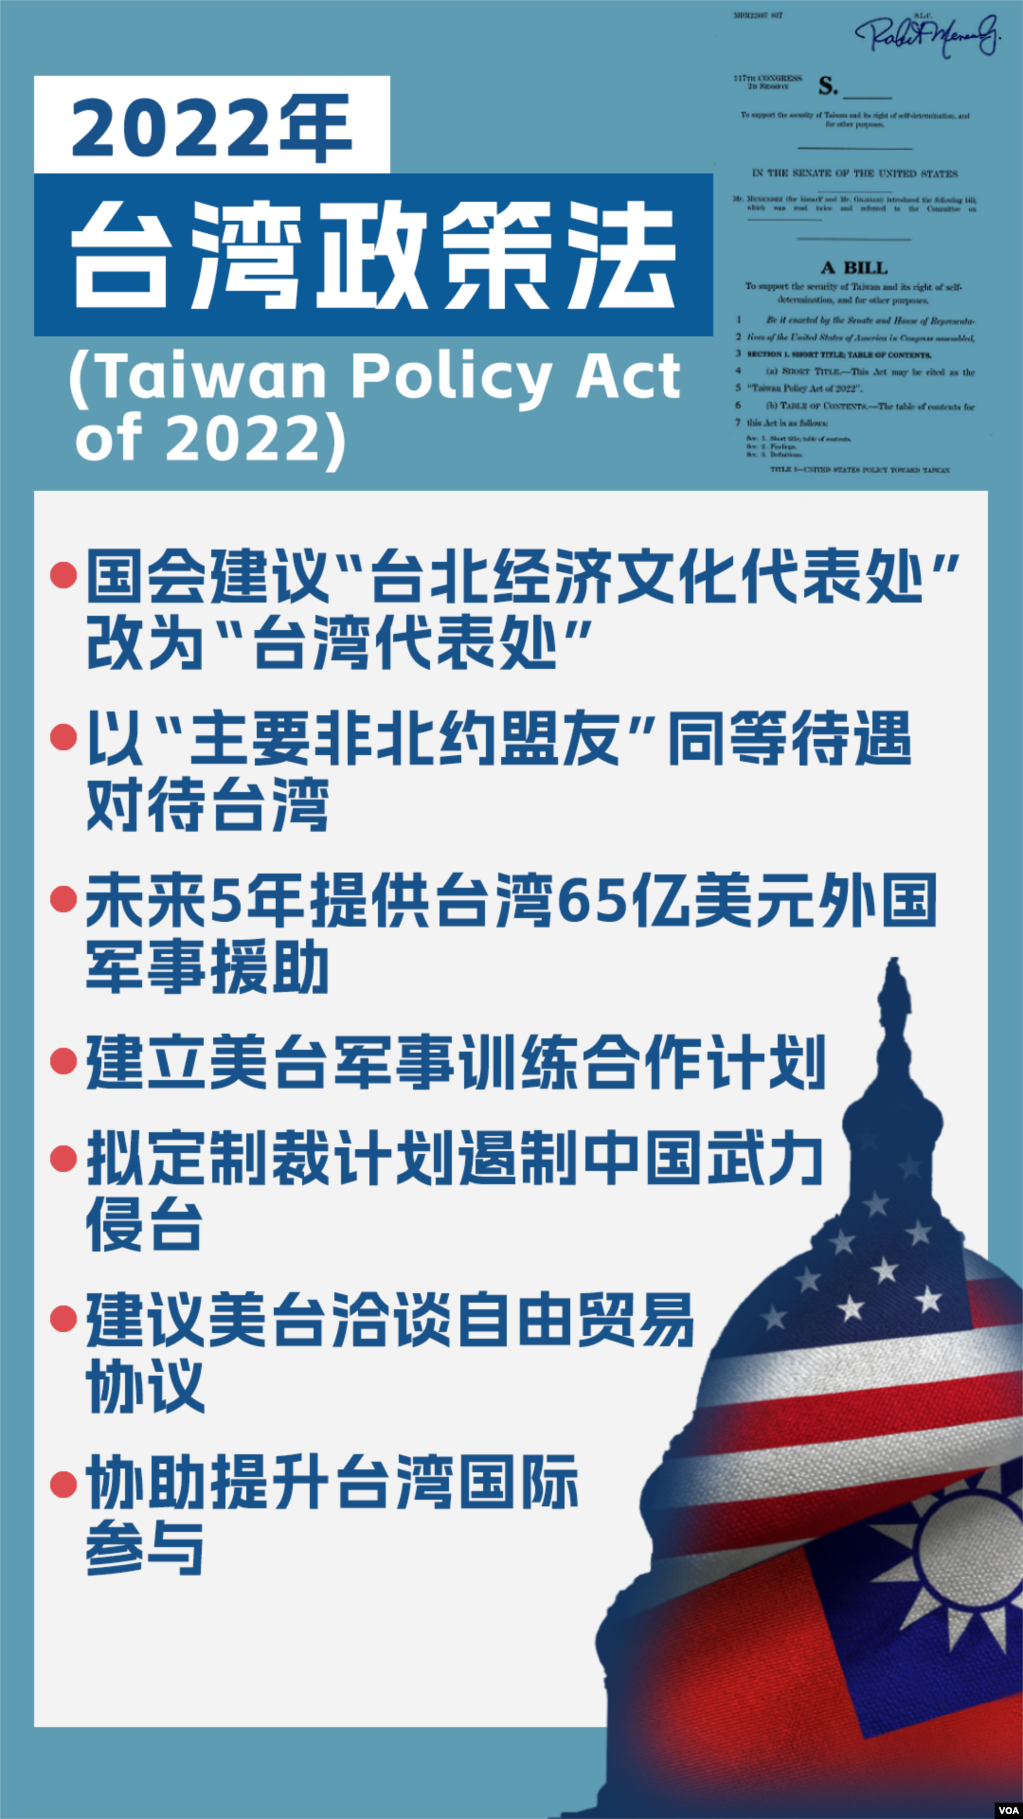 美参议院外交委员会2022年9月14日通过的《台湾政策法》关键内容图示(photo:VOA)